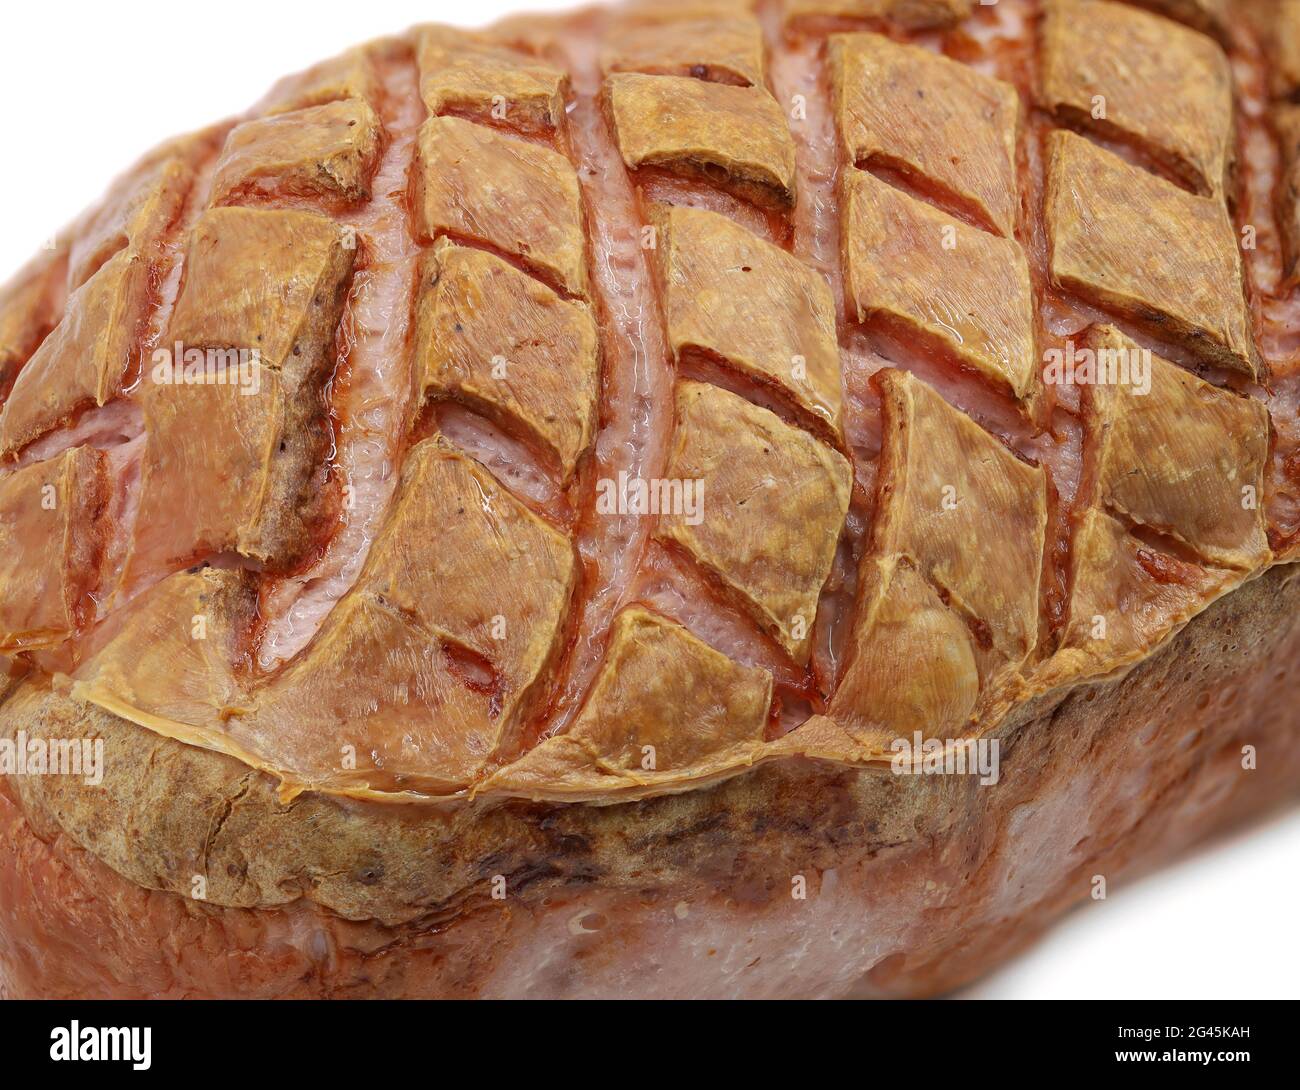 Nahaufnahme von frischer deutscher Leberkäsekruste, typischer bayerischer Fleischkuchen als Hintergrund Stockfoto